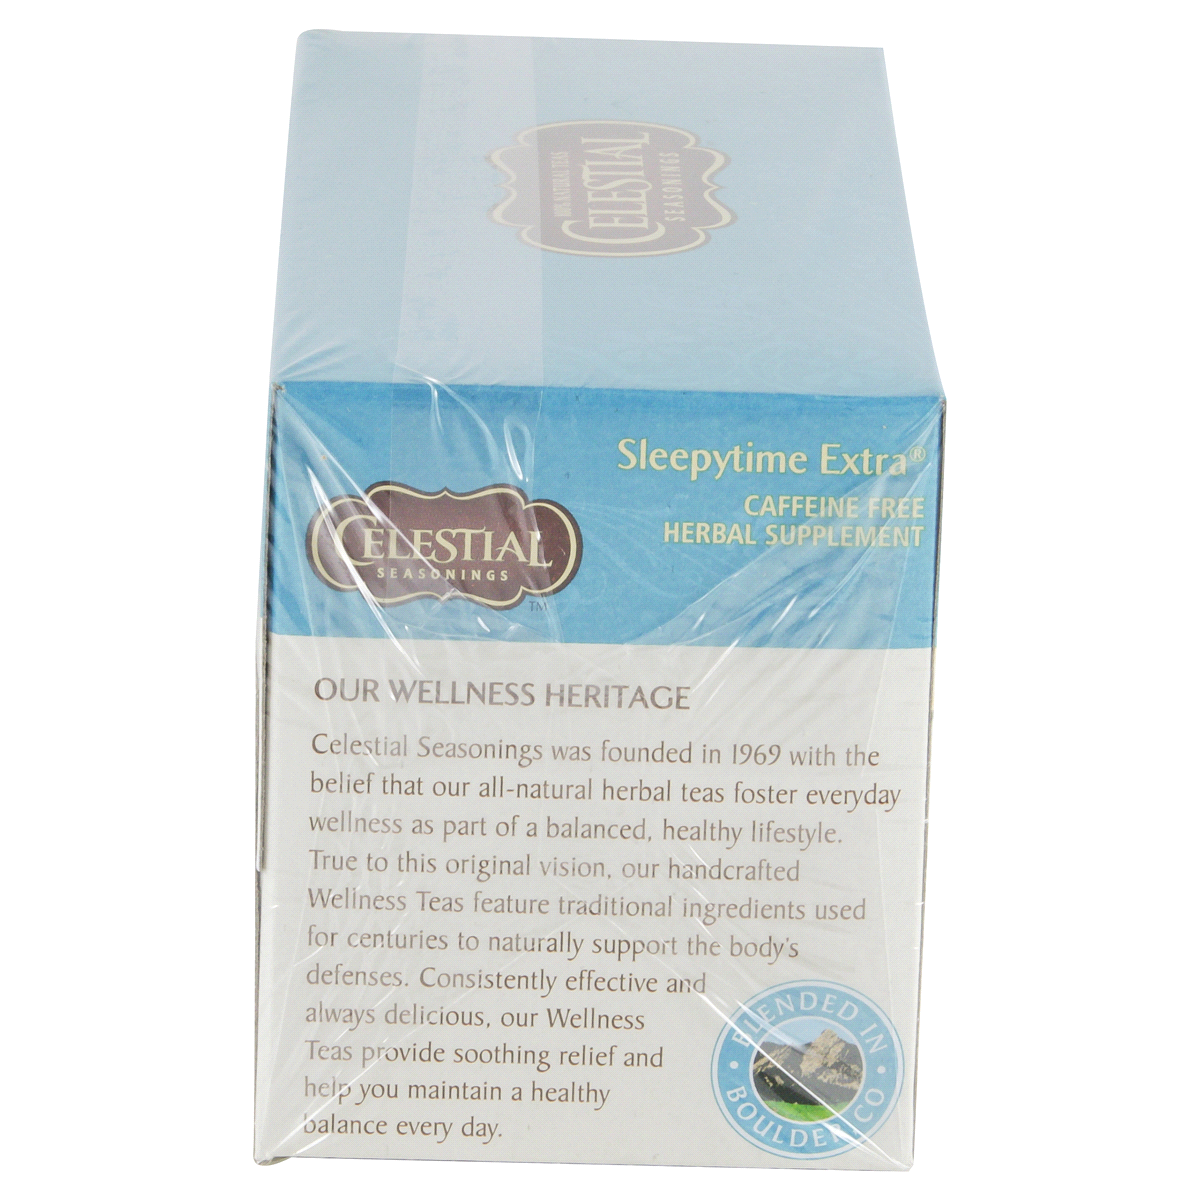 slide 17 of 31, Celestial Seasonings Sleepytime Extra Caffeine Free Herbal Supplement Tea Bags 20 ct Box, 1.2 oz